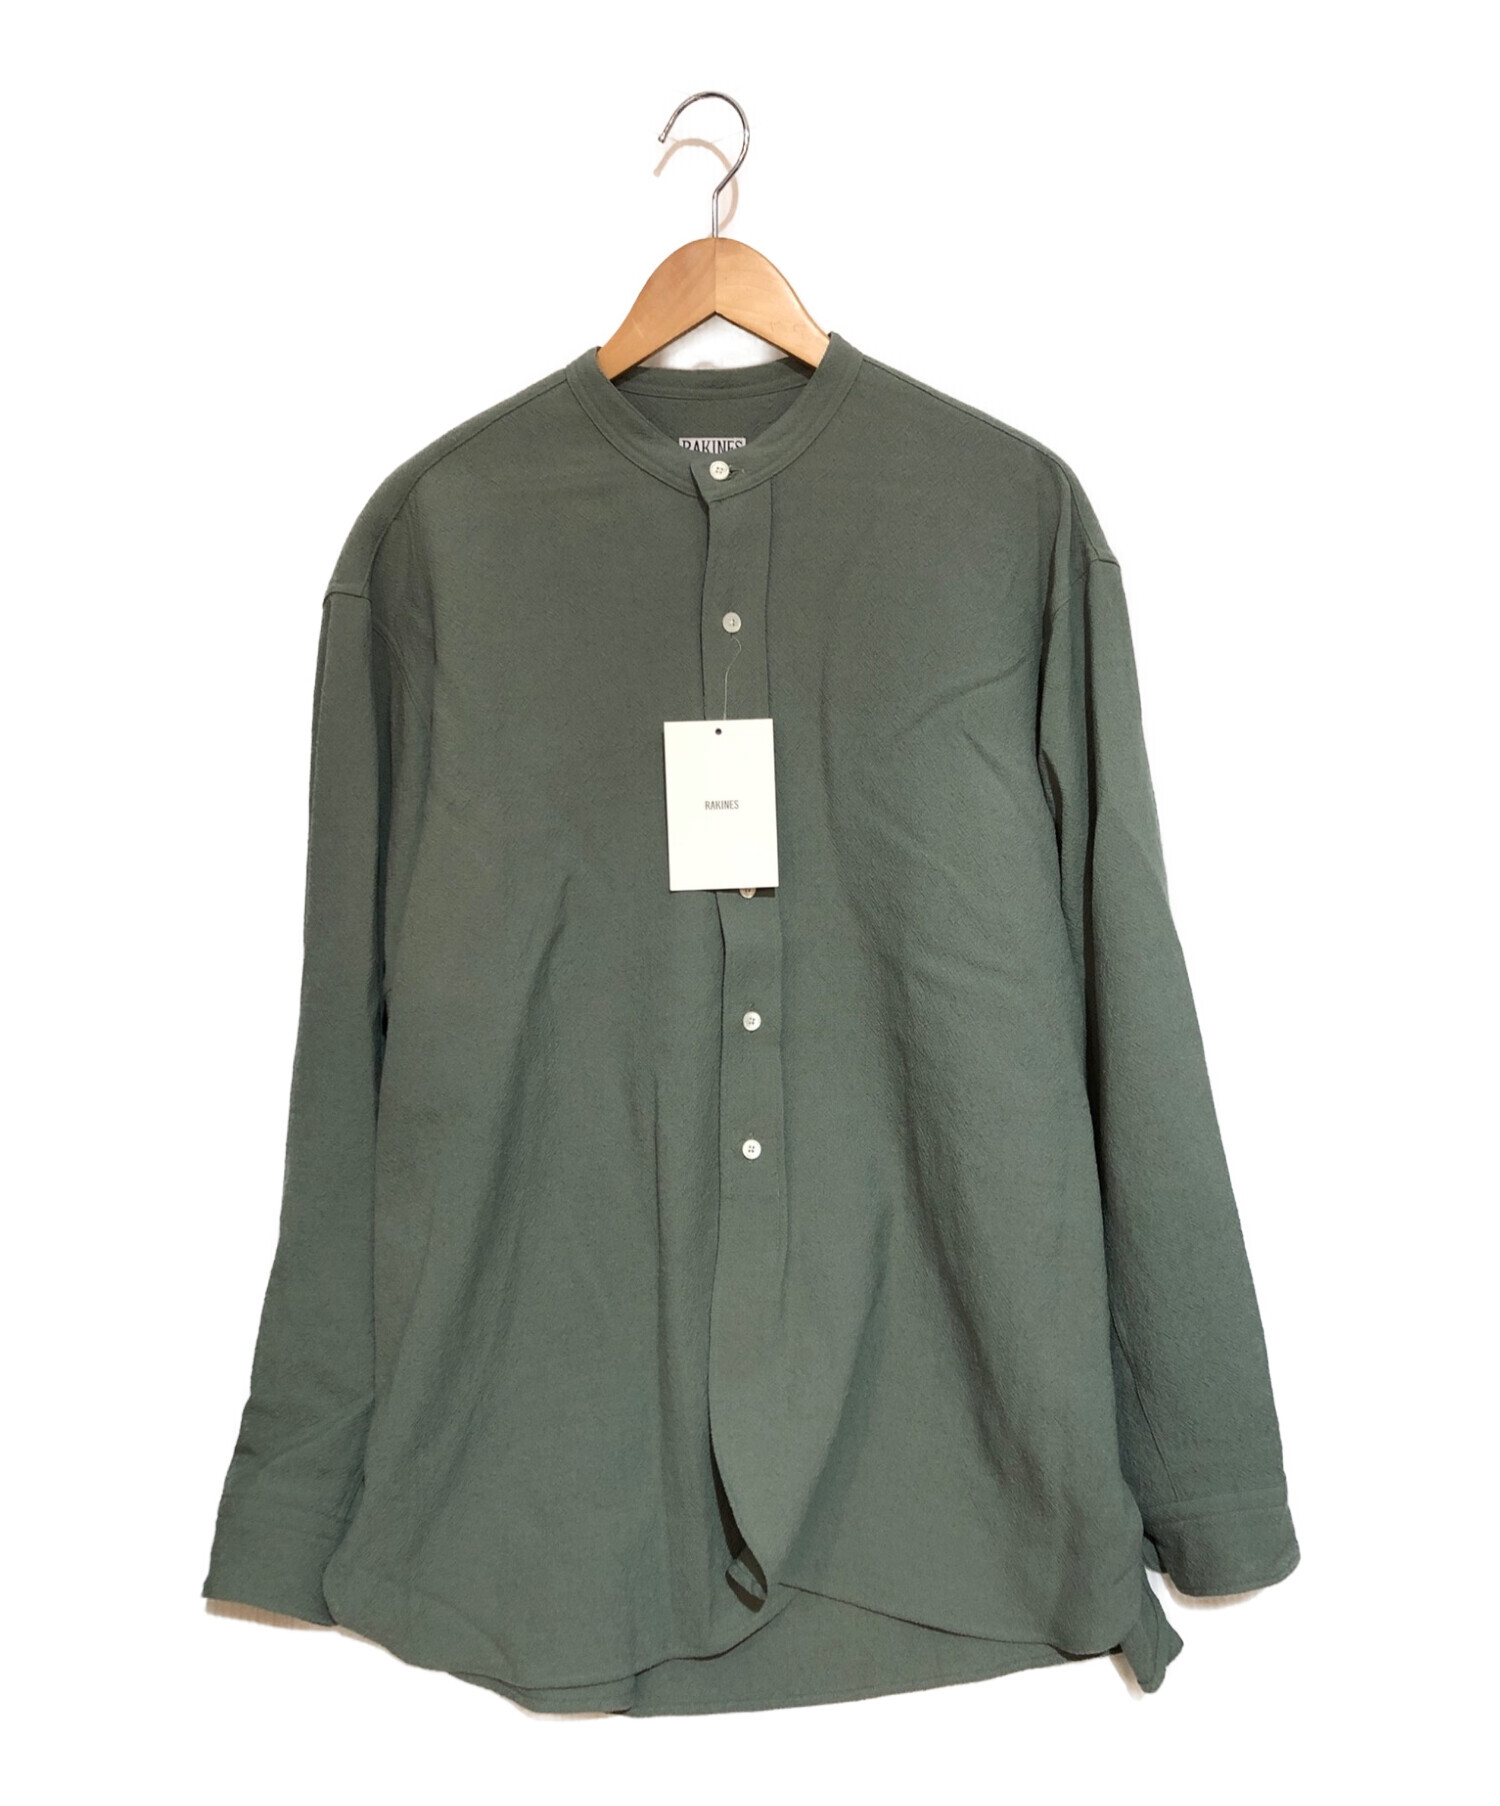 RAKINES (ラキネス) 21AW Rigid washer tropical Band collar shirt バンドカラーシャツ グリーン  サイズ:2 未使用品